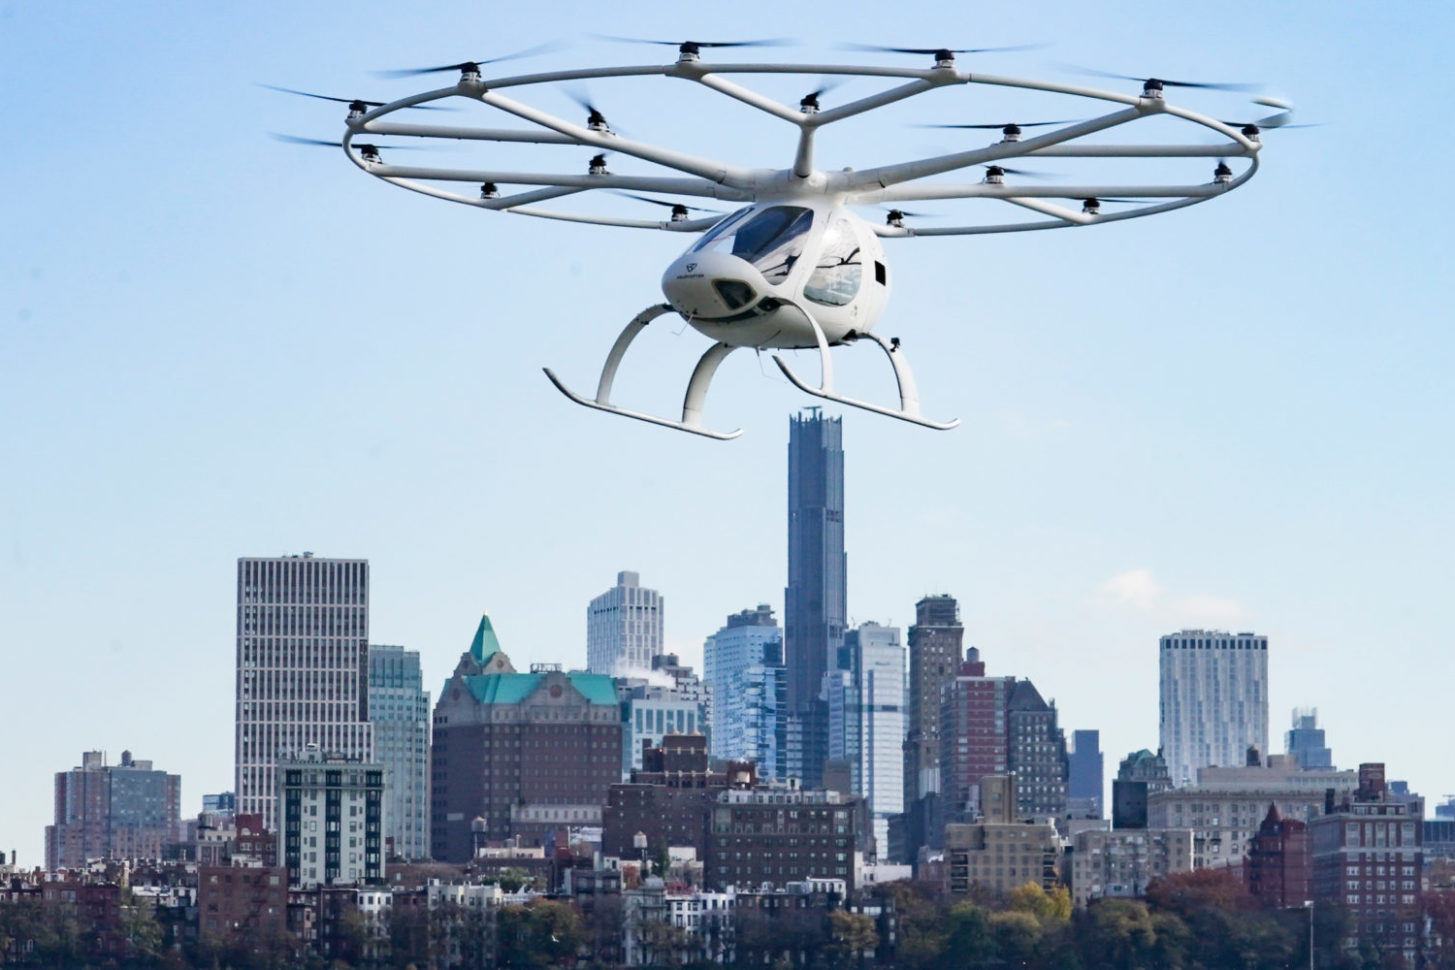 Der Volocopter 2X, ein elektrisch betriebenes senkrecht startendes und landendes Luftfahrzeug (eVTOL), fliegt während einer Demonstration von eVTOLs bei einem Testflug auf dem Hubschrauberlandeplatz in der Innenstadt von Manhattan.